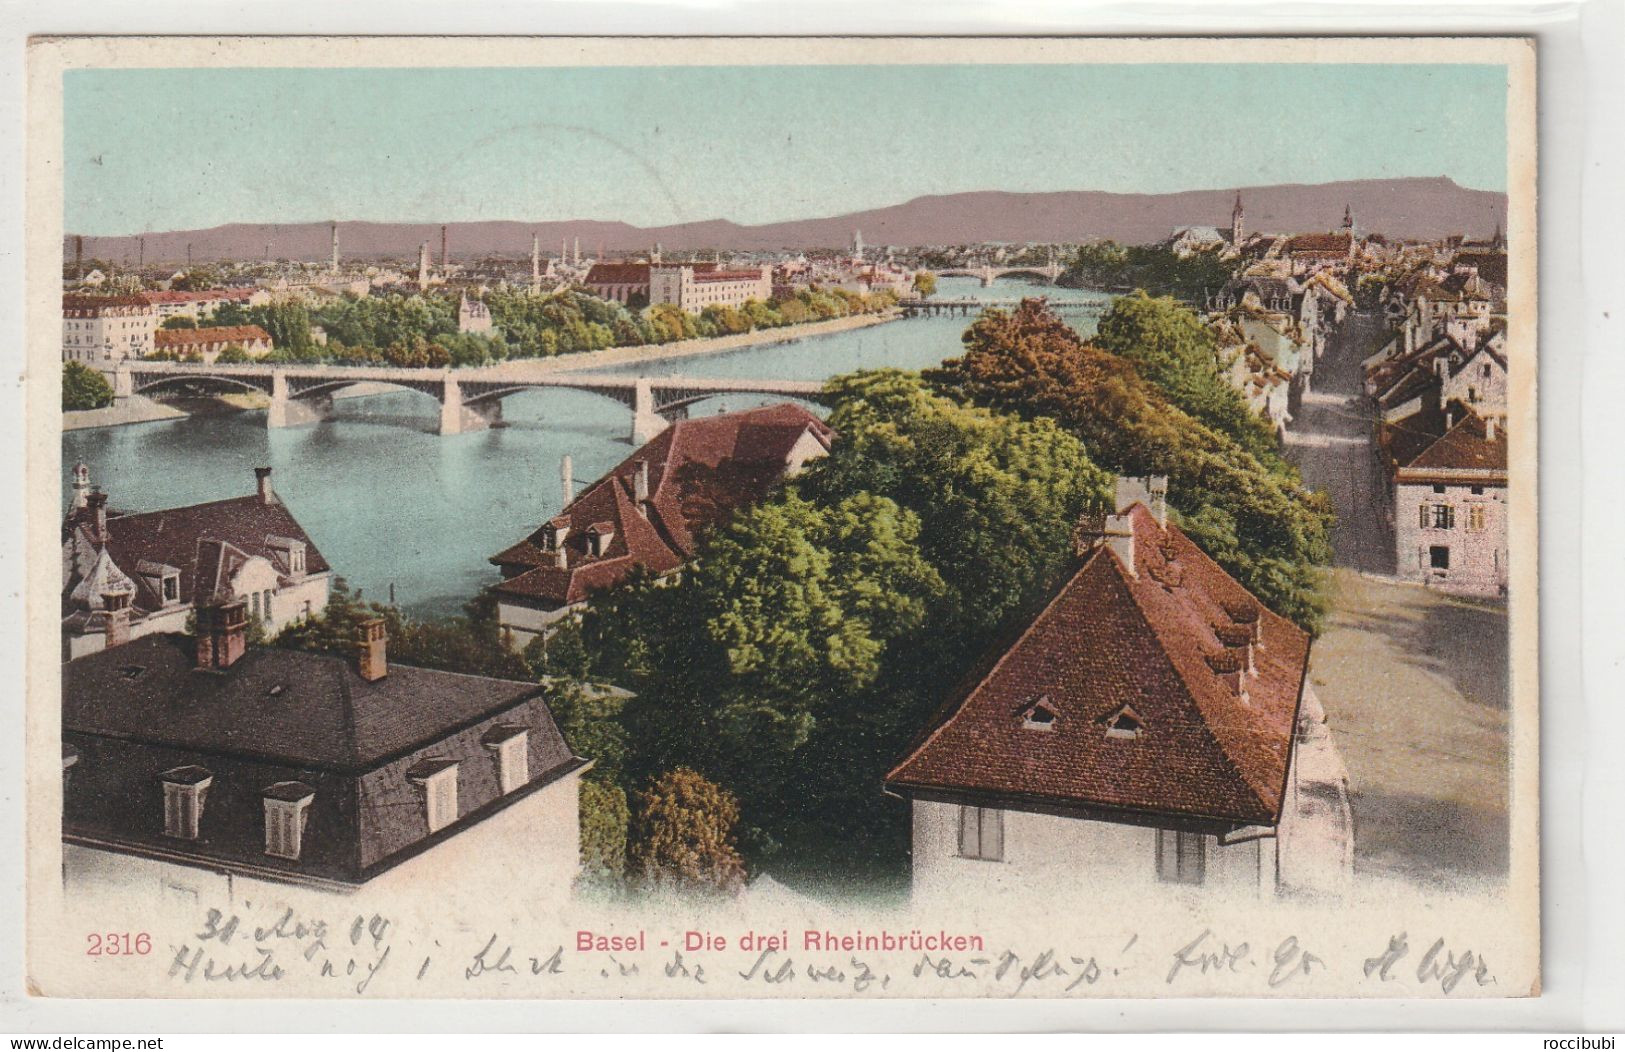 Basel - Basel